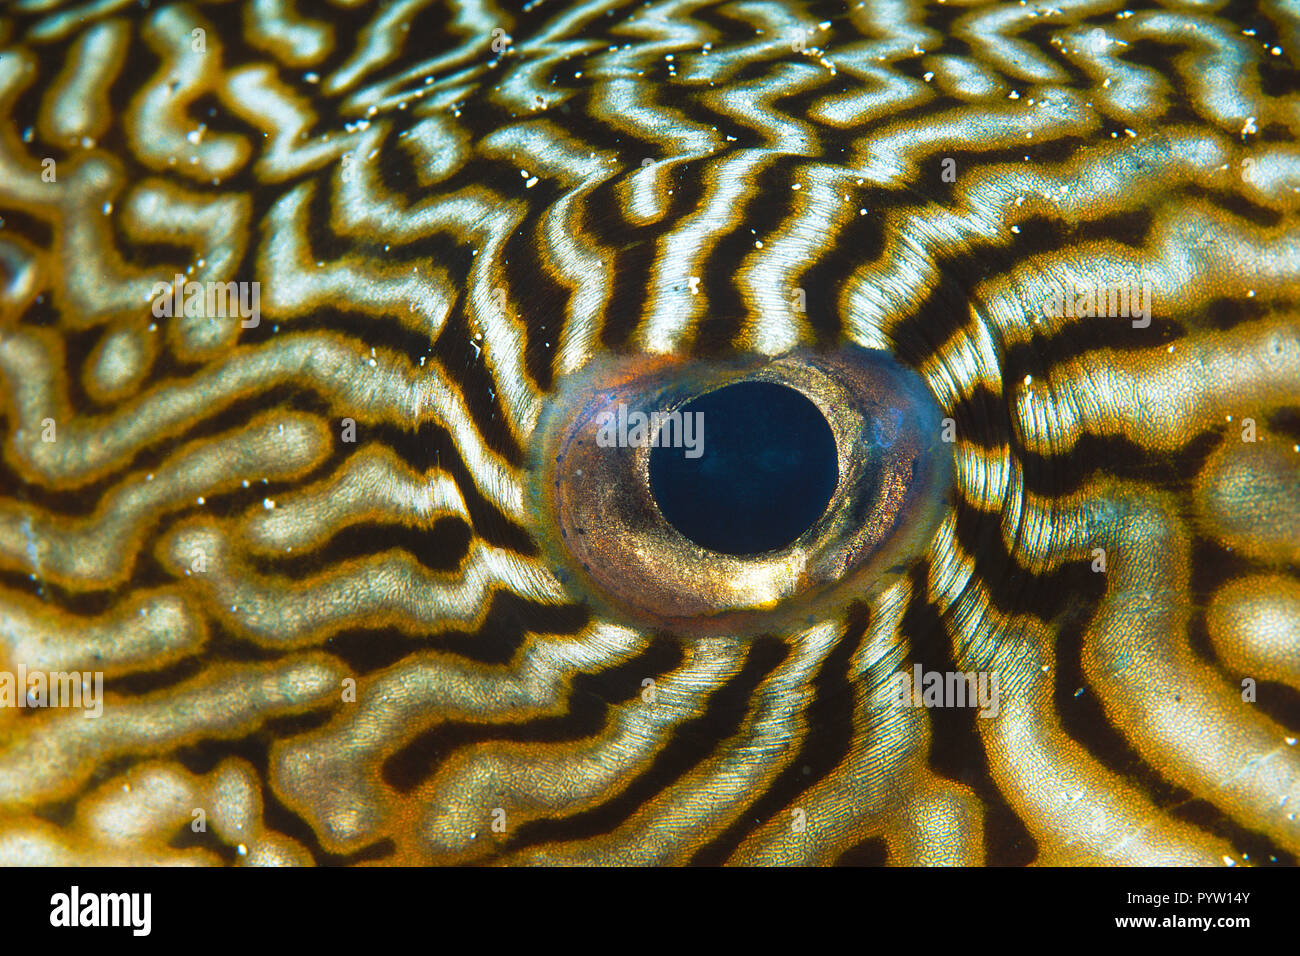 Auge von einem (Mappa-Kugelfisch Arothron mappa), oeil de Wakatobi, Indonesien | détail d'une Mappa (poisson-globe Arothron mappa), île de Wakatobi Indonésie Banque D'Images